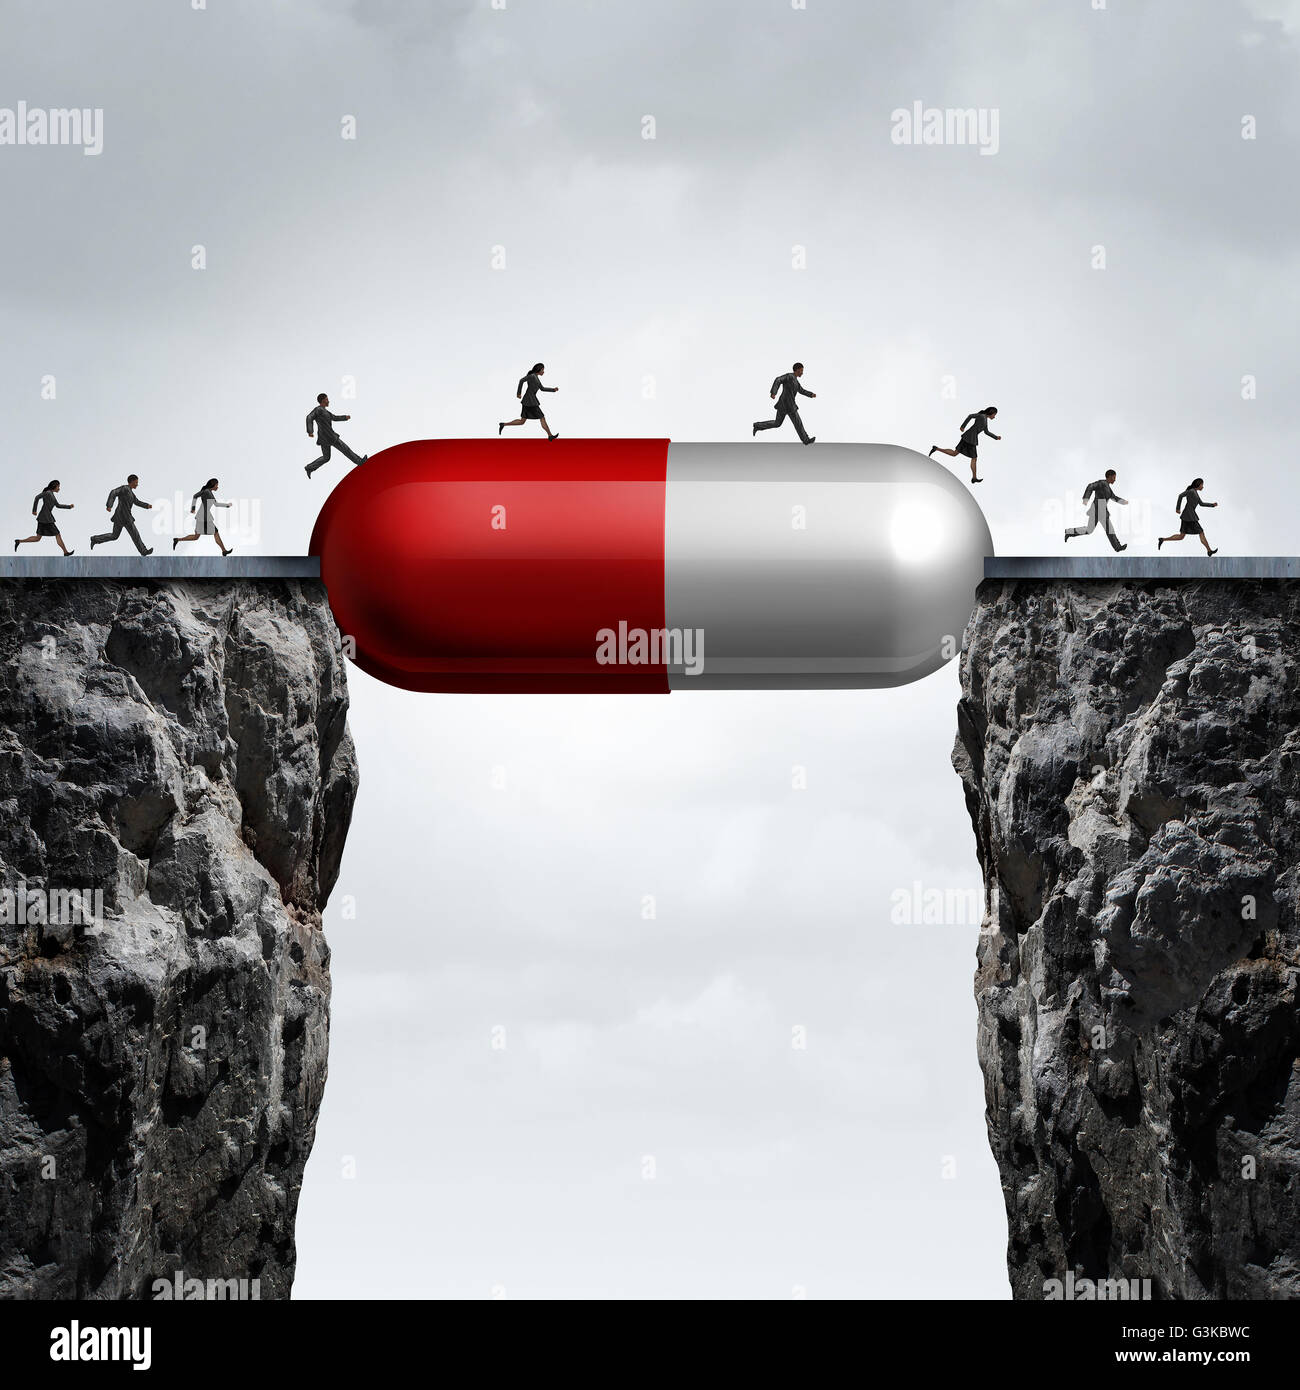 Solución de medicina y medicamento cura concepto como un grupo de personas corriendo por dos acantilados con una prescripción píldora creando. Foto de stock